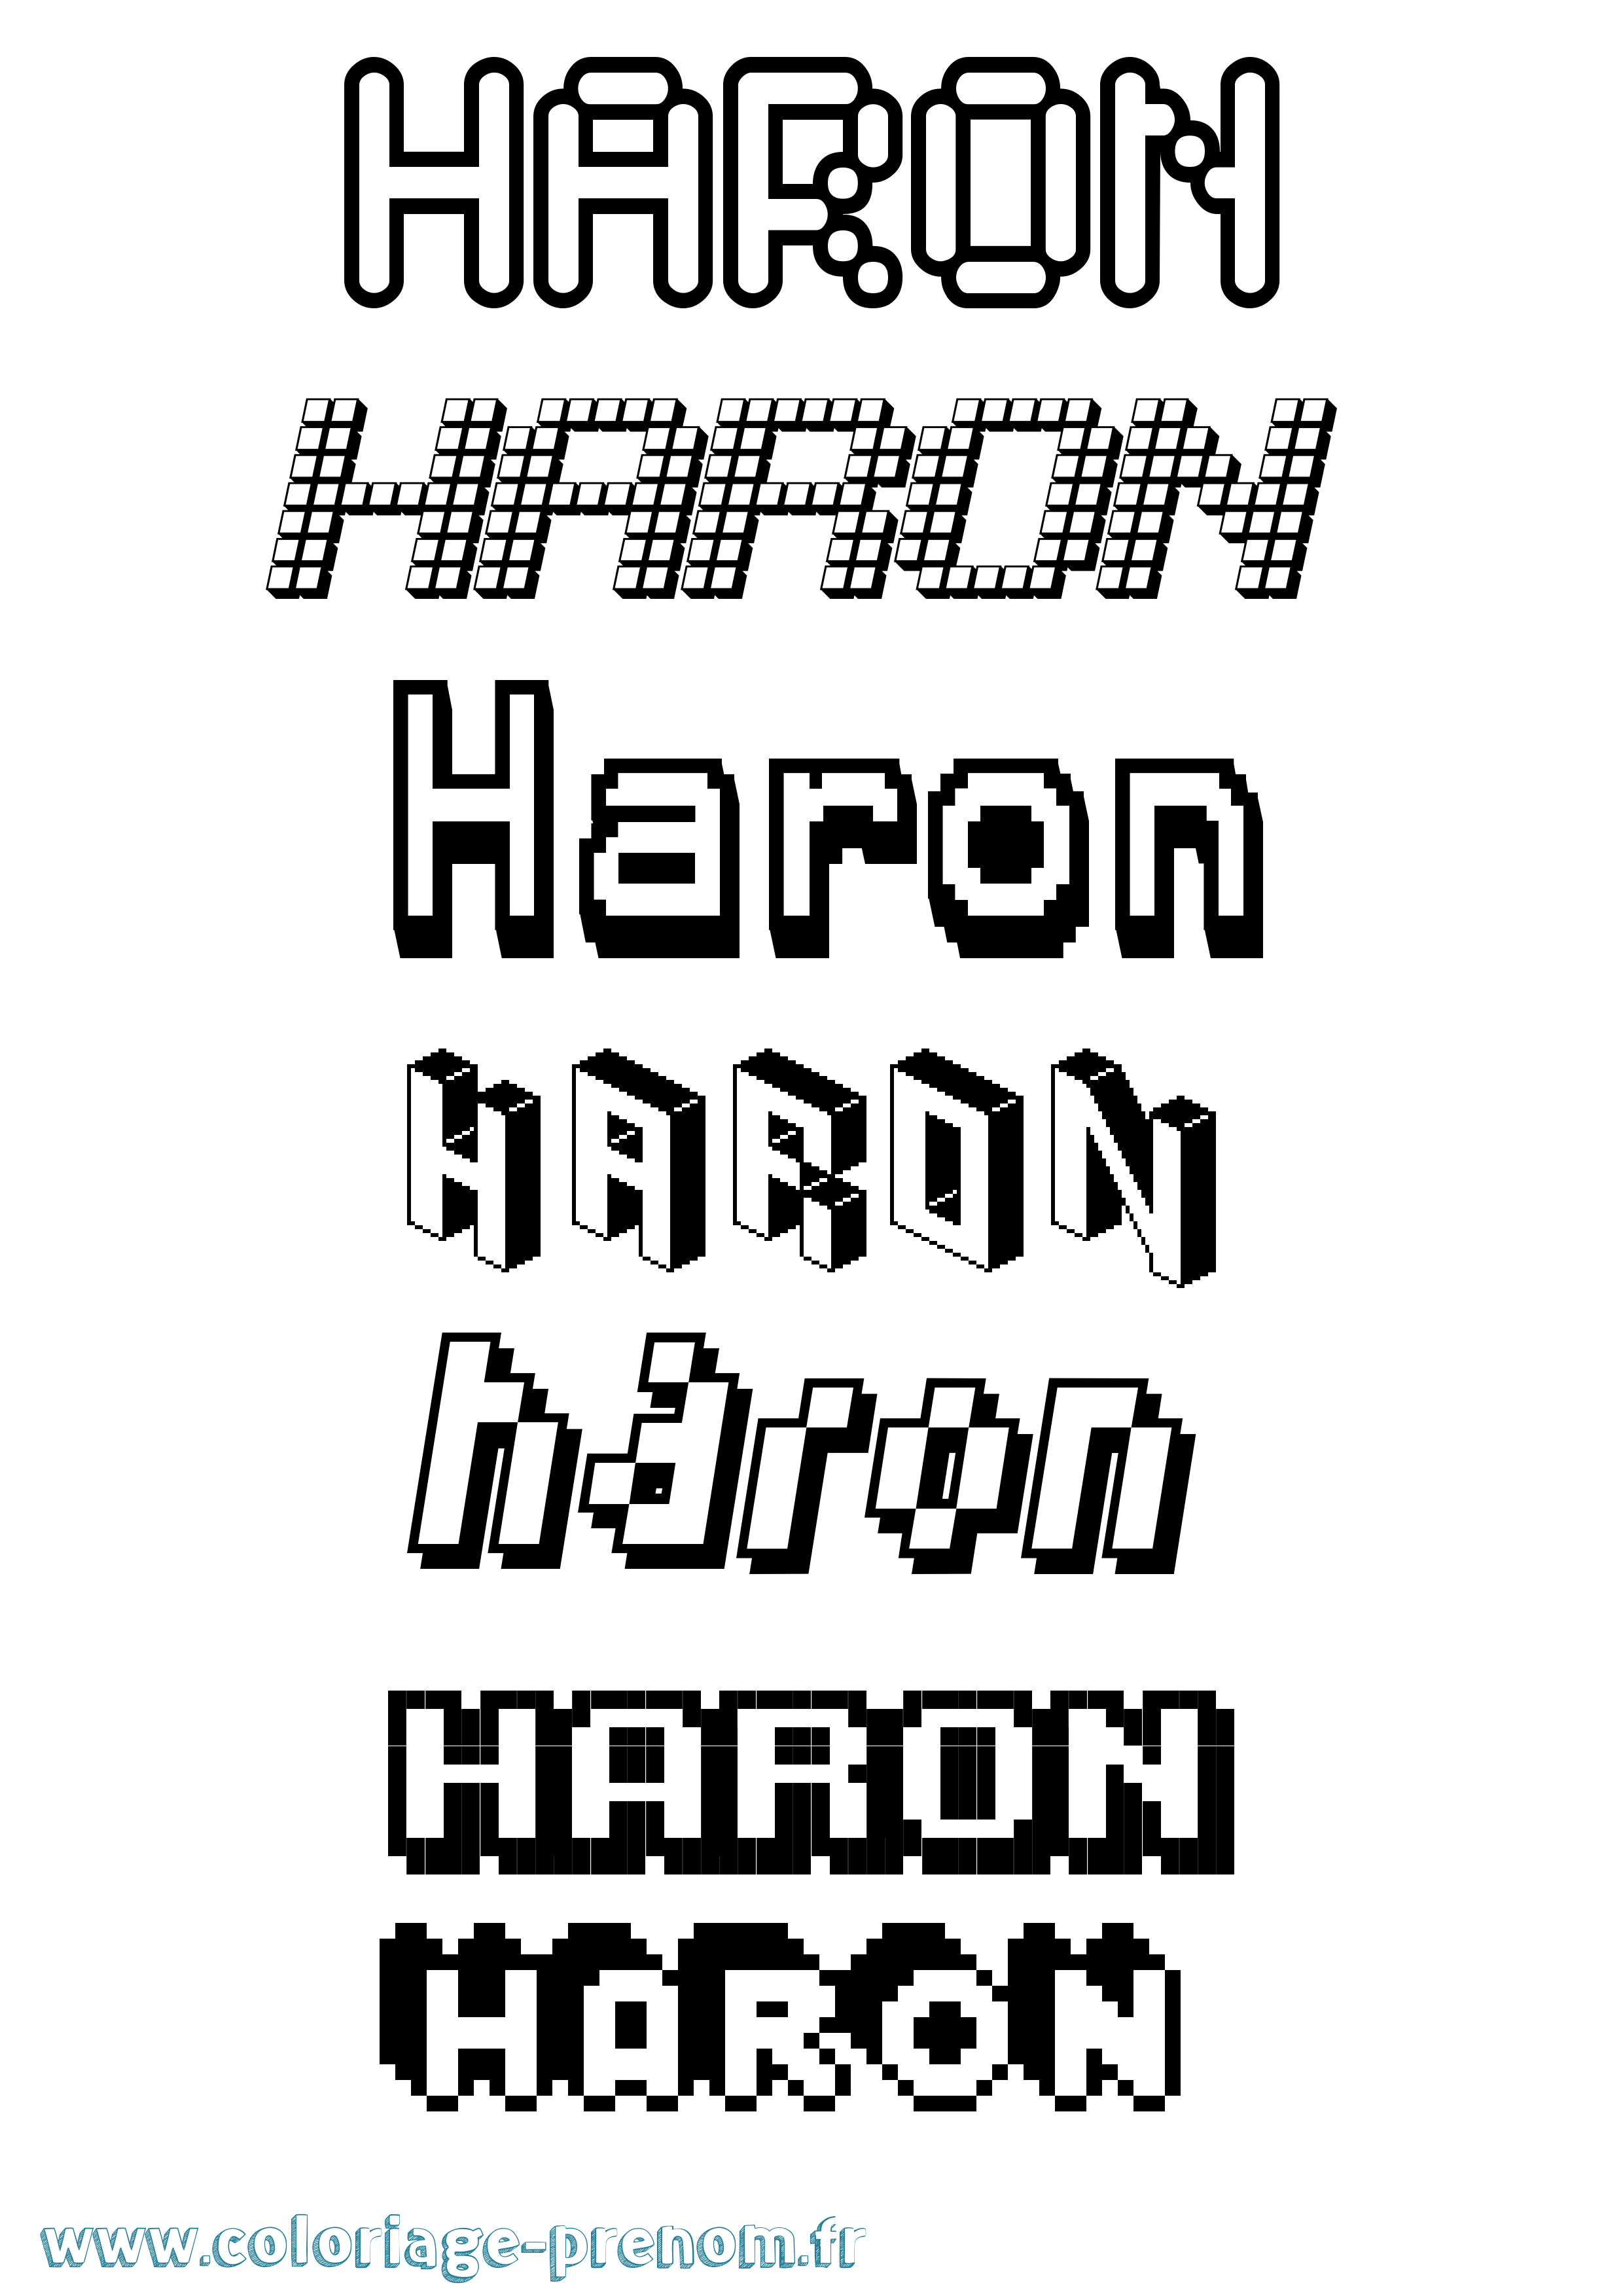 Coloriage prénom Haron